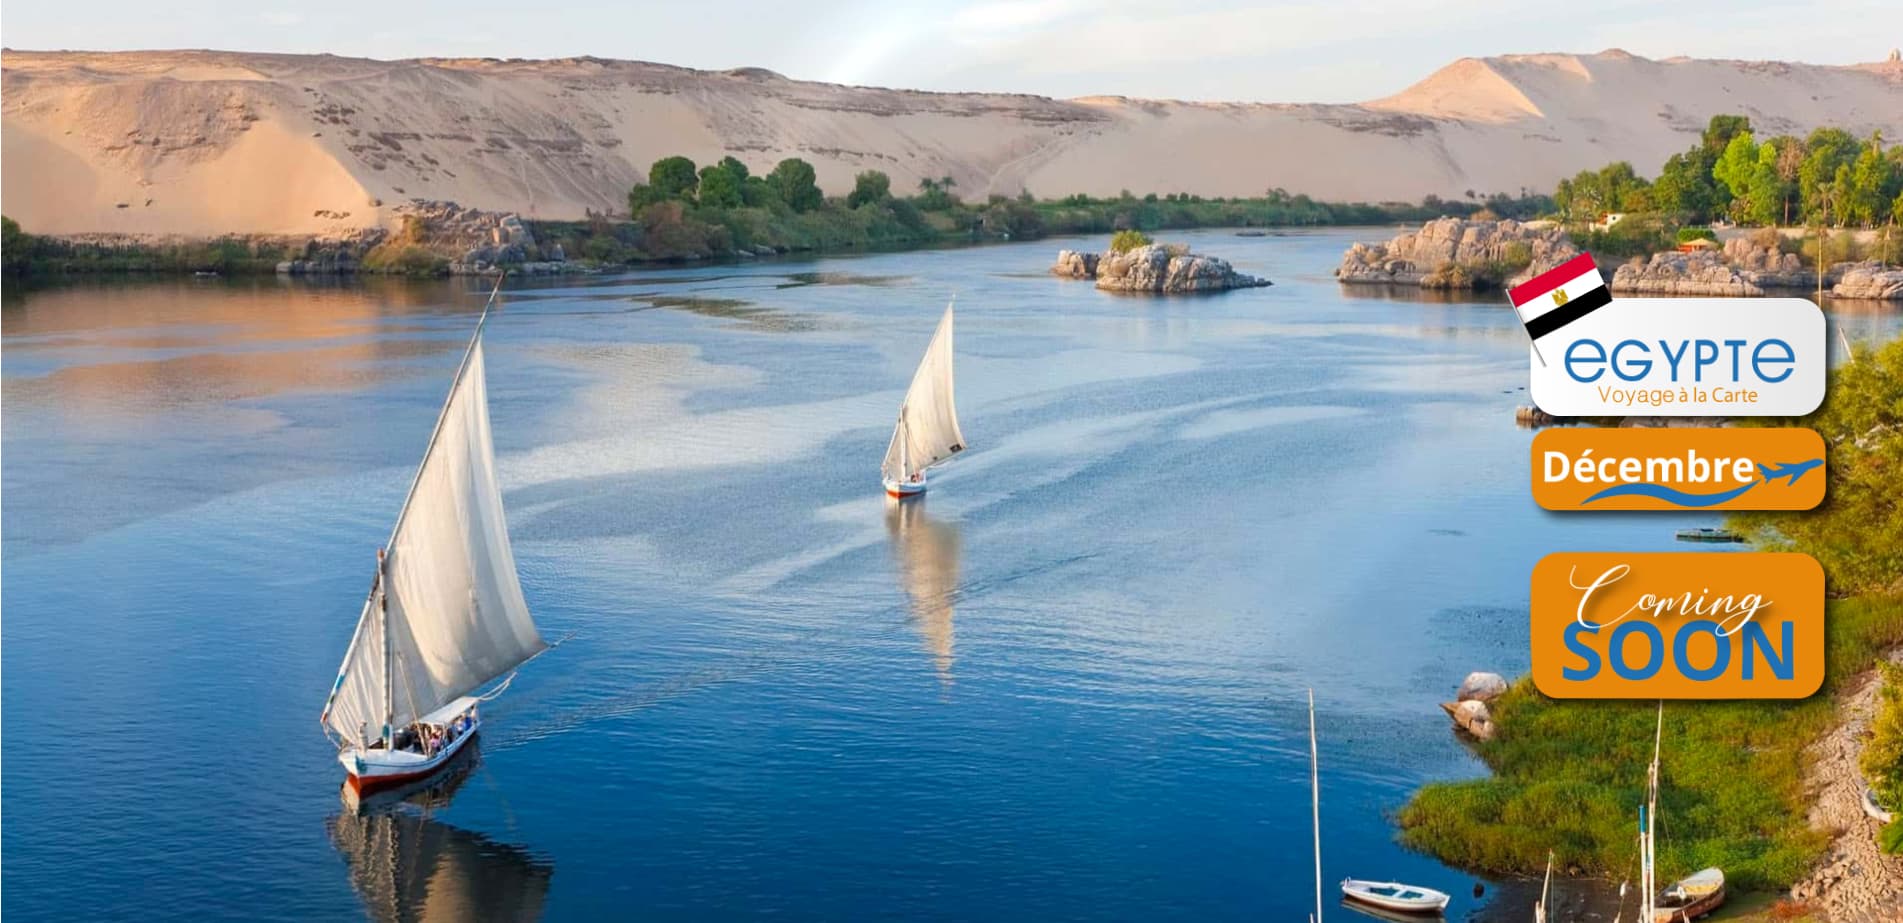 Voyage-egypt